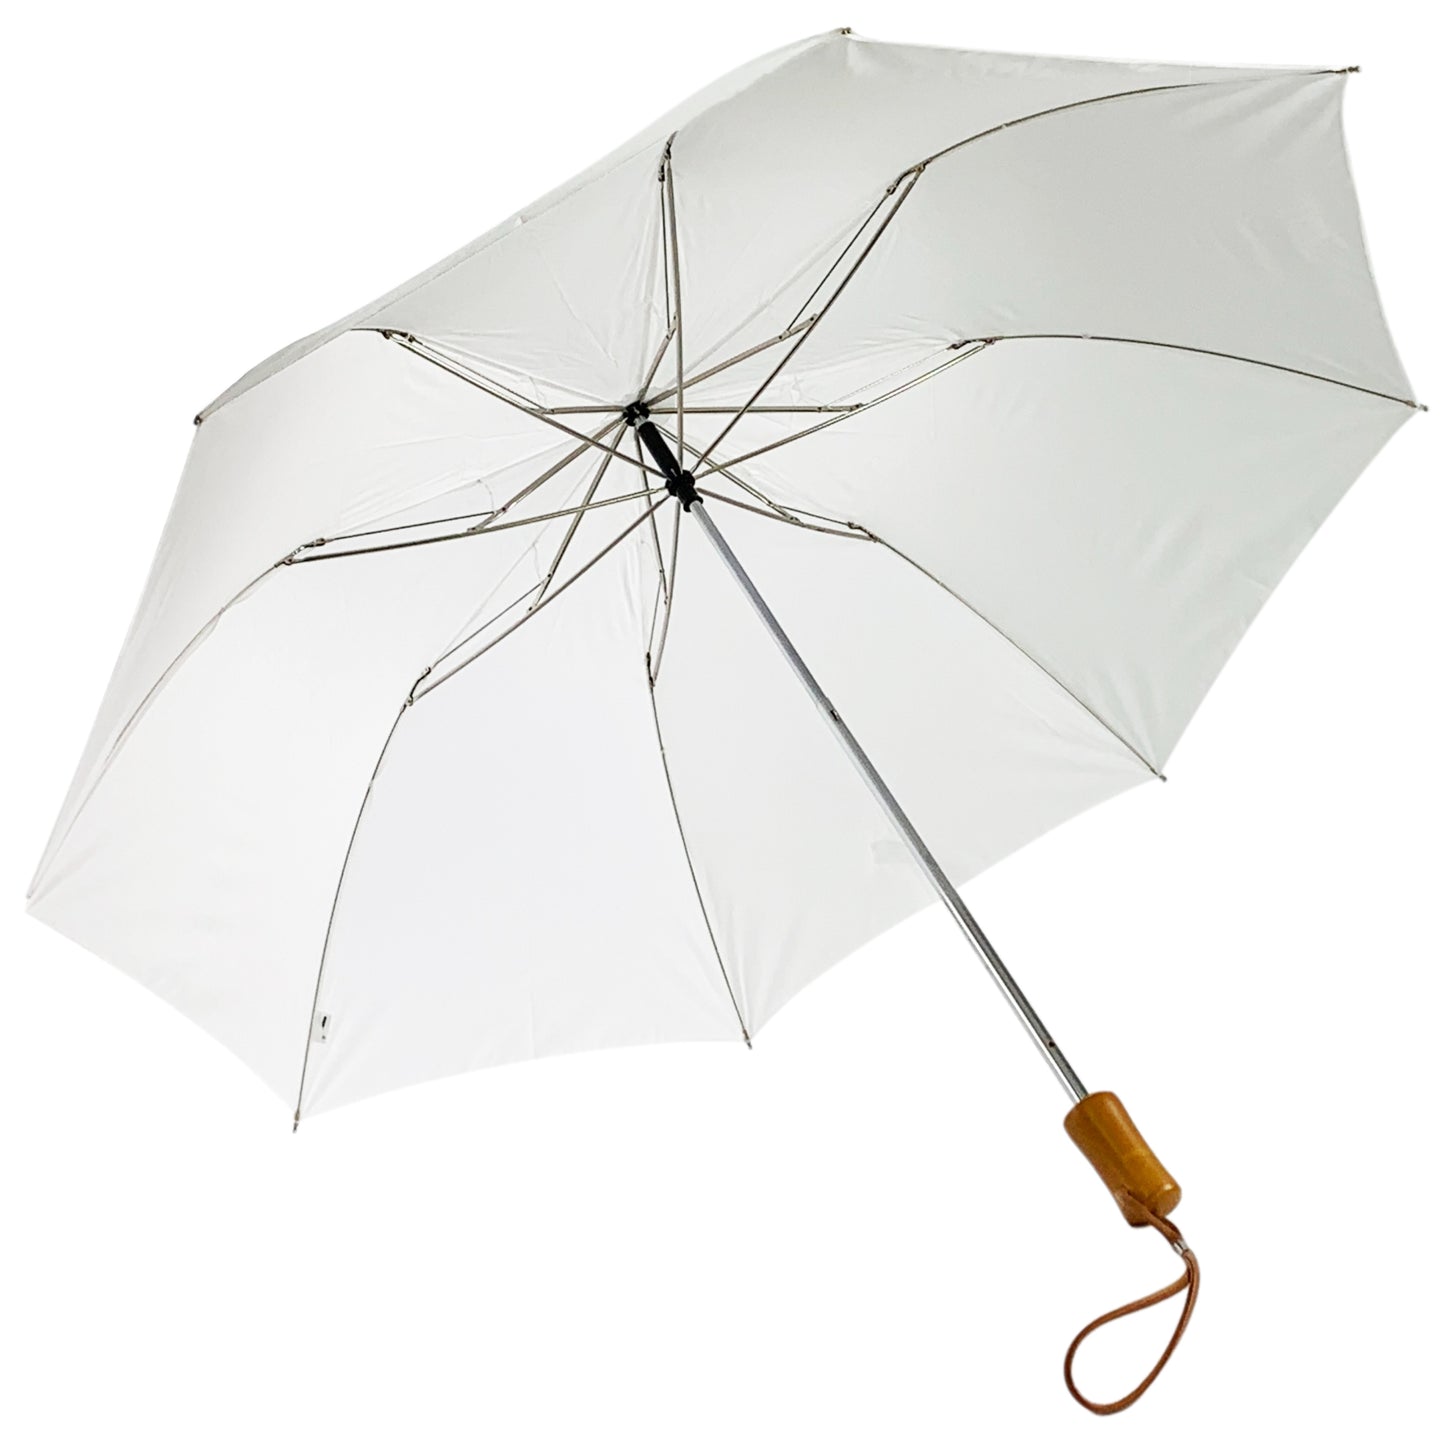 Λευκή Ομπρέλα Βροχής Σπαστή με ίσια ξύλινη λαβή (Κωδικός 01-02-0217).